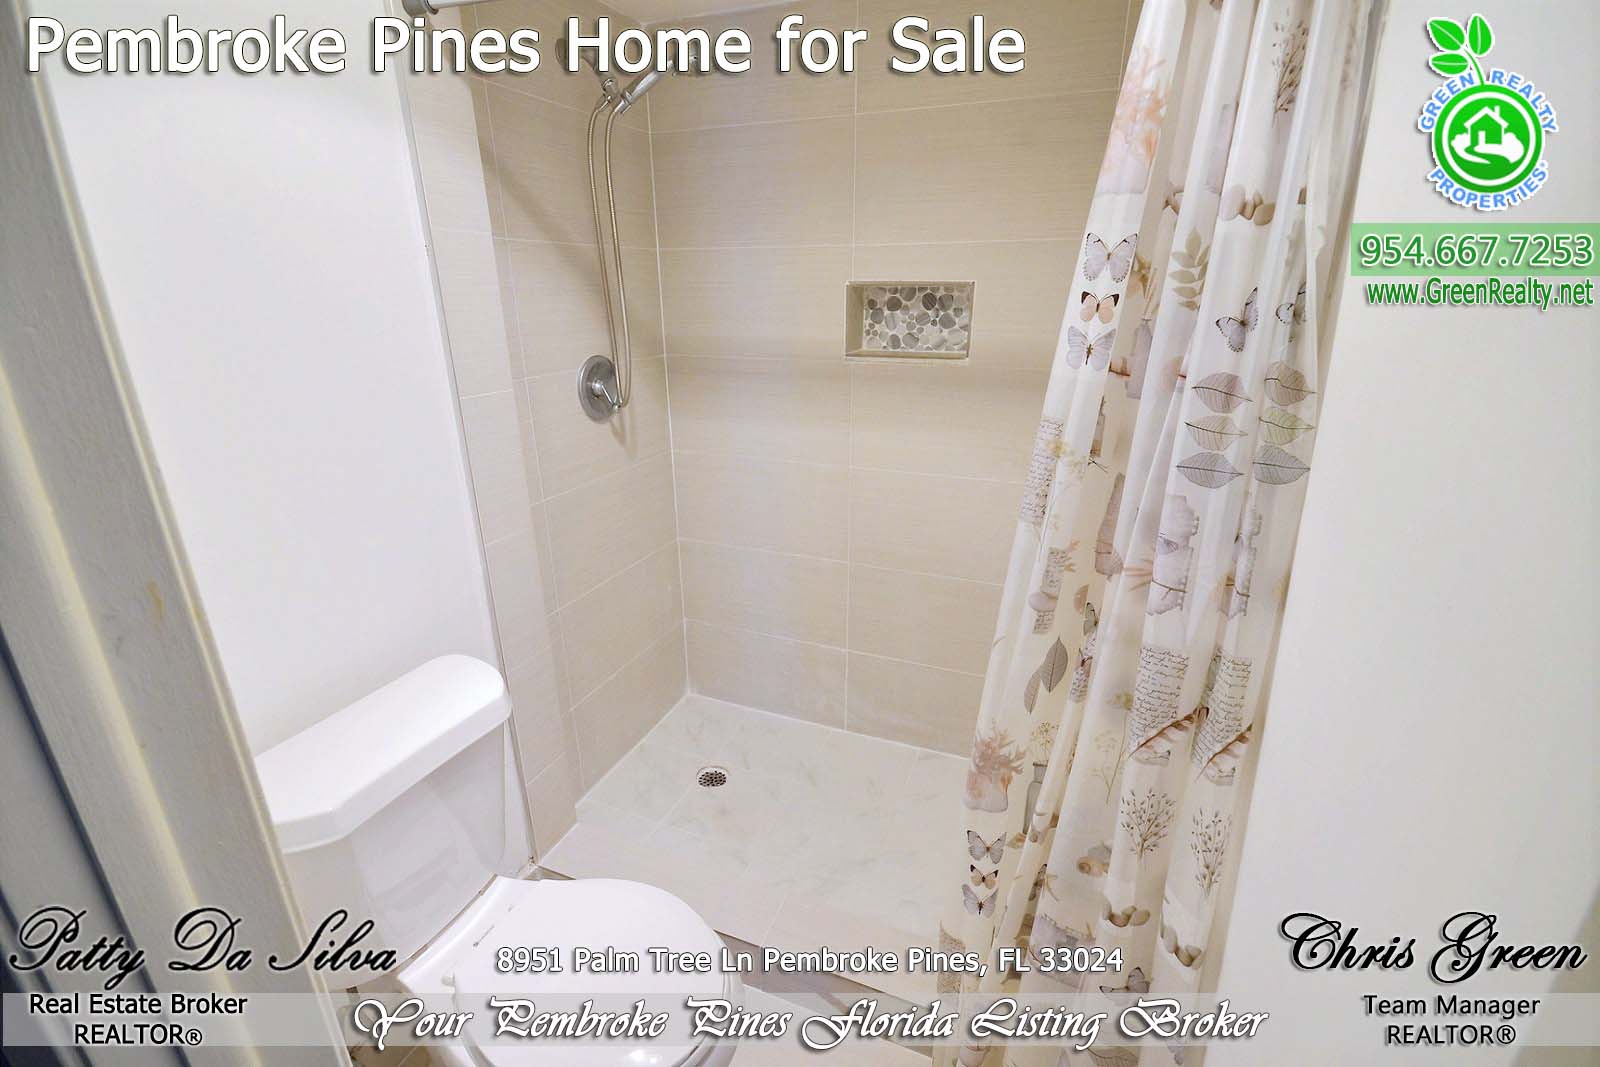 Pembroke Pines Homes For Sale - 8951 Palm Tree Lane (25)